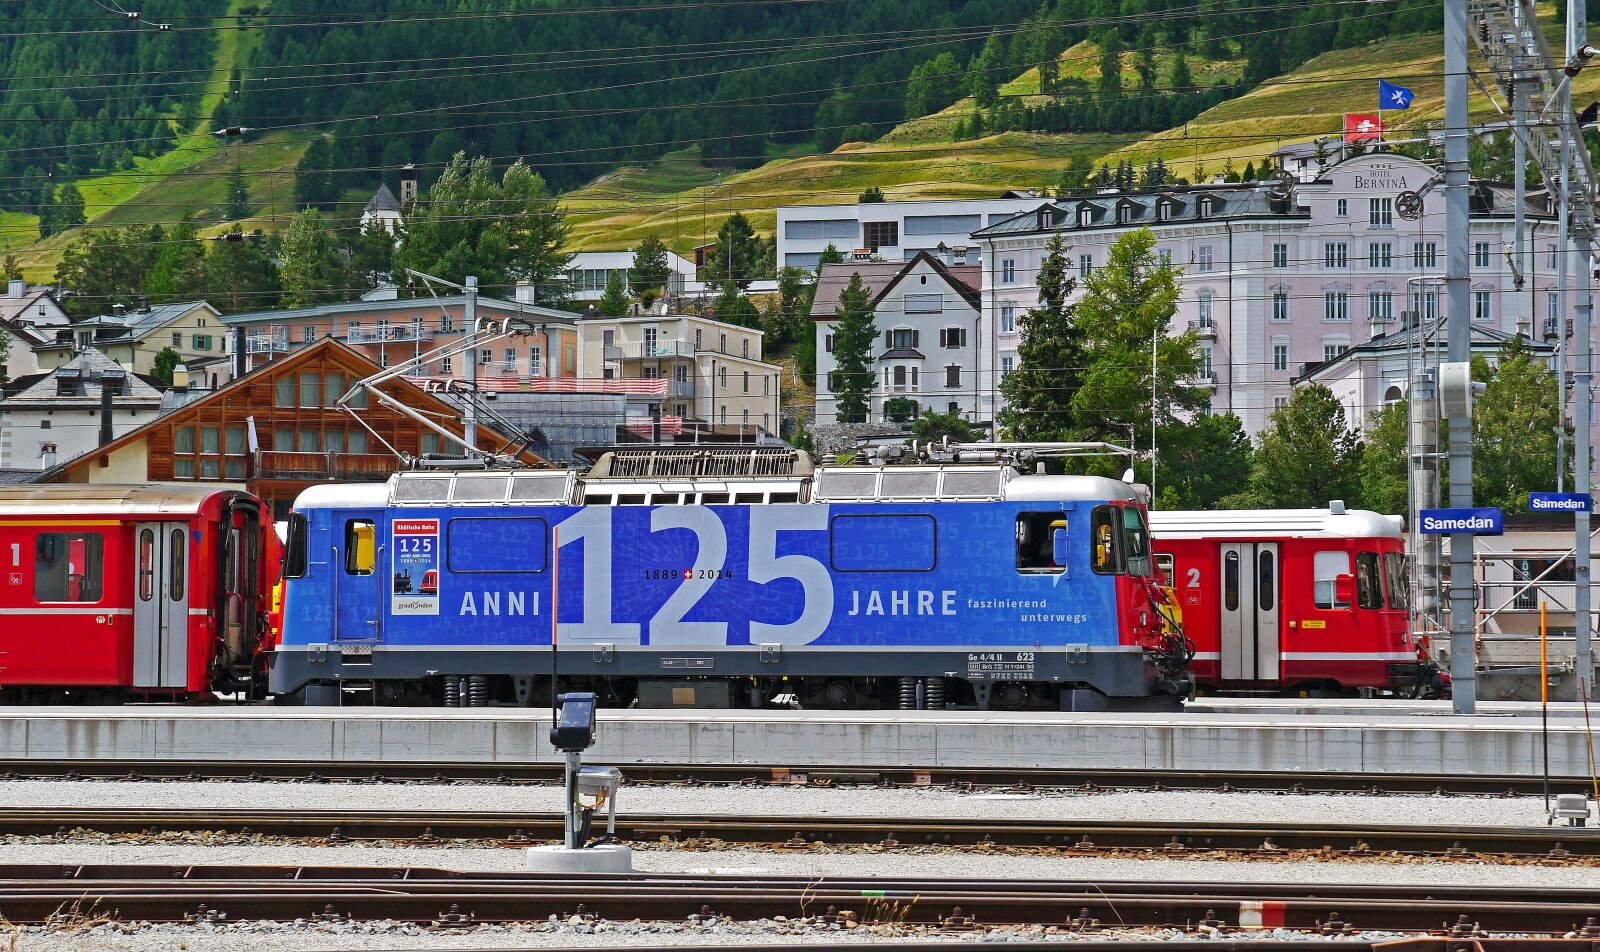 Panasonic Lumix DMC-G3 sample photo. Rhaetian railways, switzerland, anniversary photography